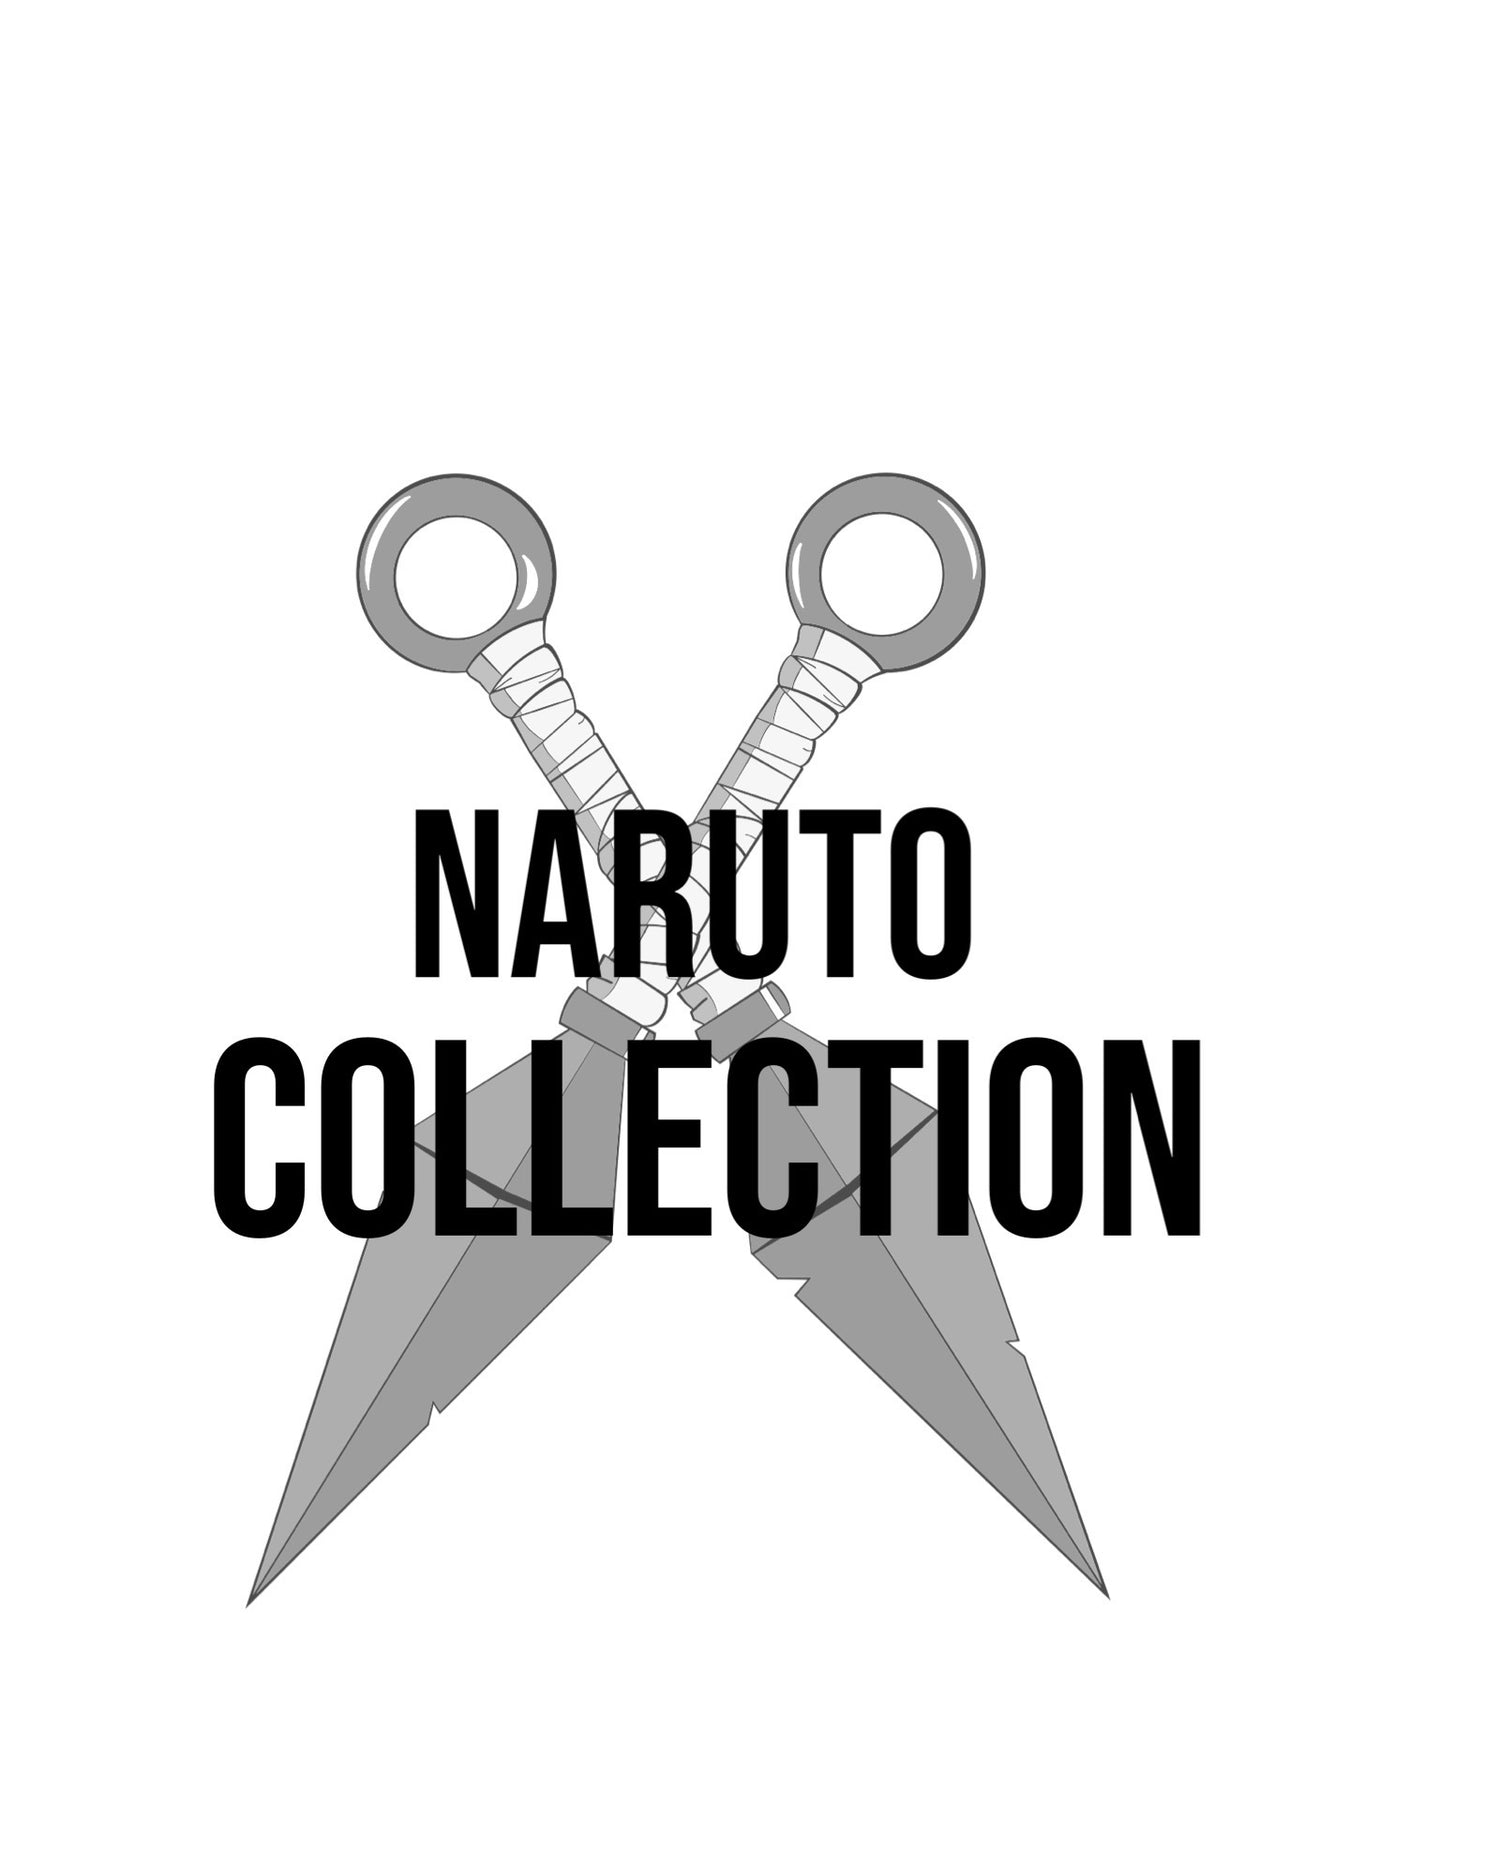 Naruto collection